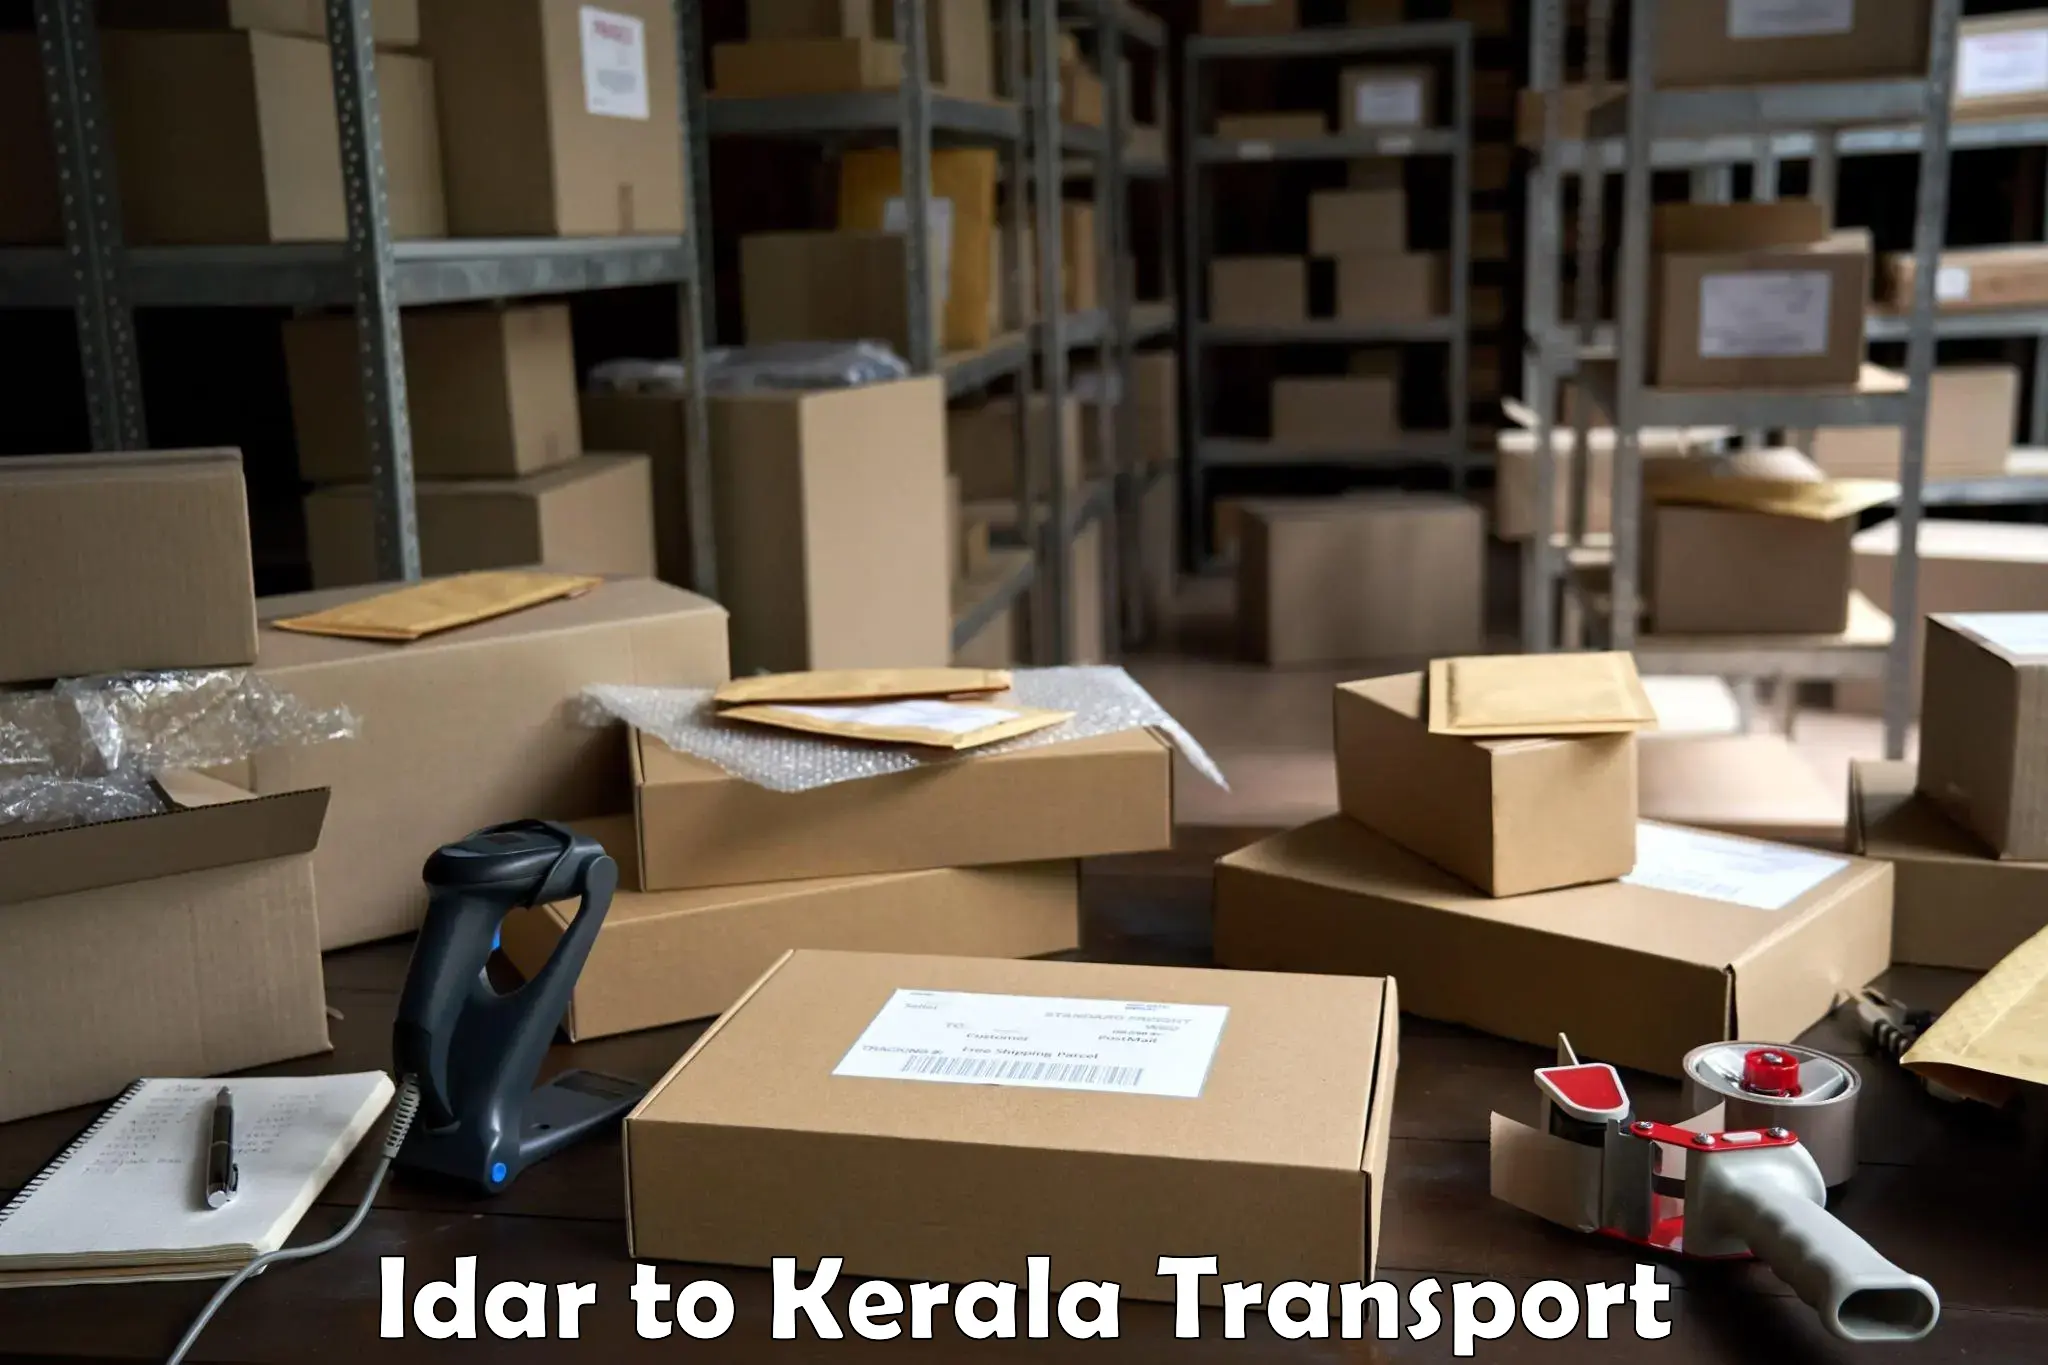 International cargo transportation services Idar to Kerala